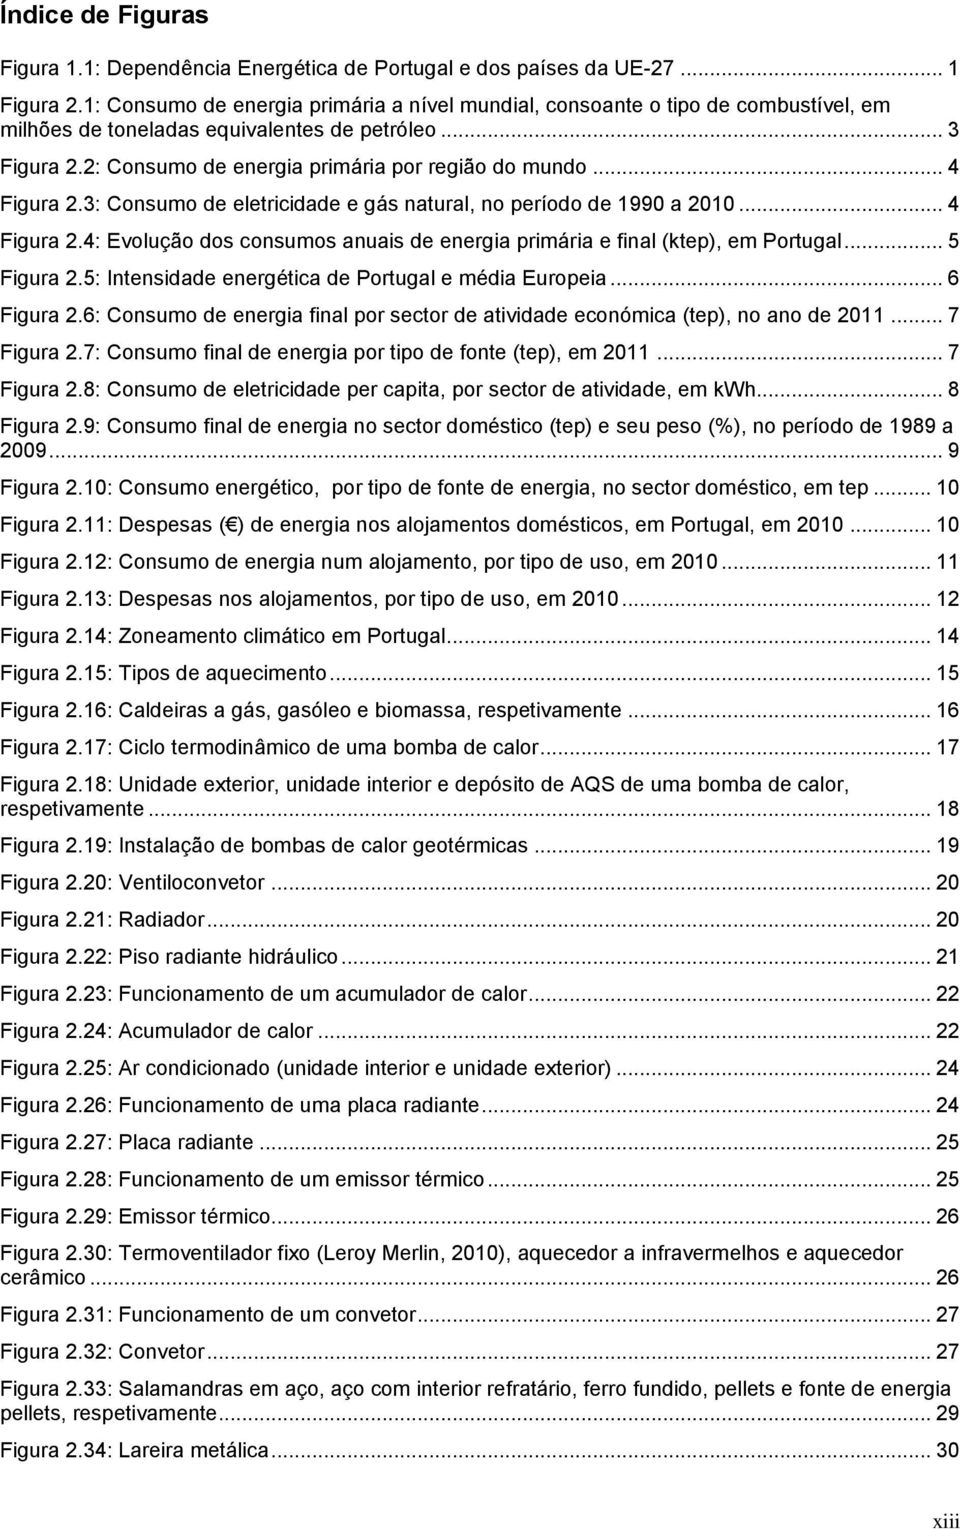 .. 4 Figura 2.3: Consumo de eletricidade e gás natural, no período de 1990 a 2010... 4 Figura 2.4: Evolução dos consumos anuais de energia primária e final (ktep), em Portugal... 5 Figura 2.